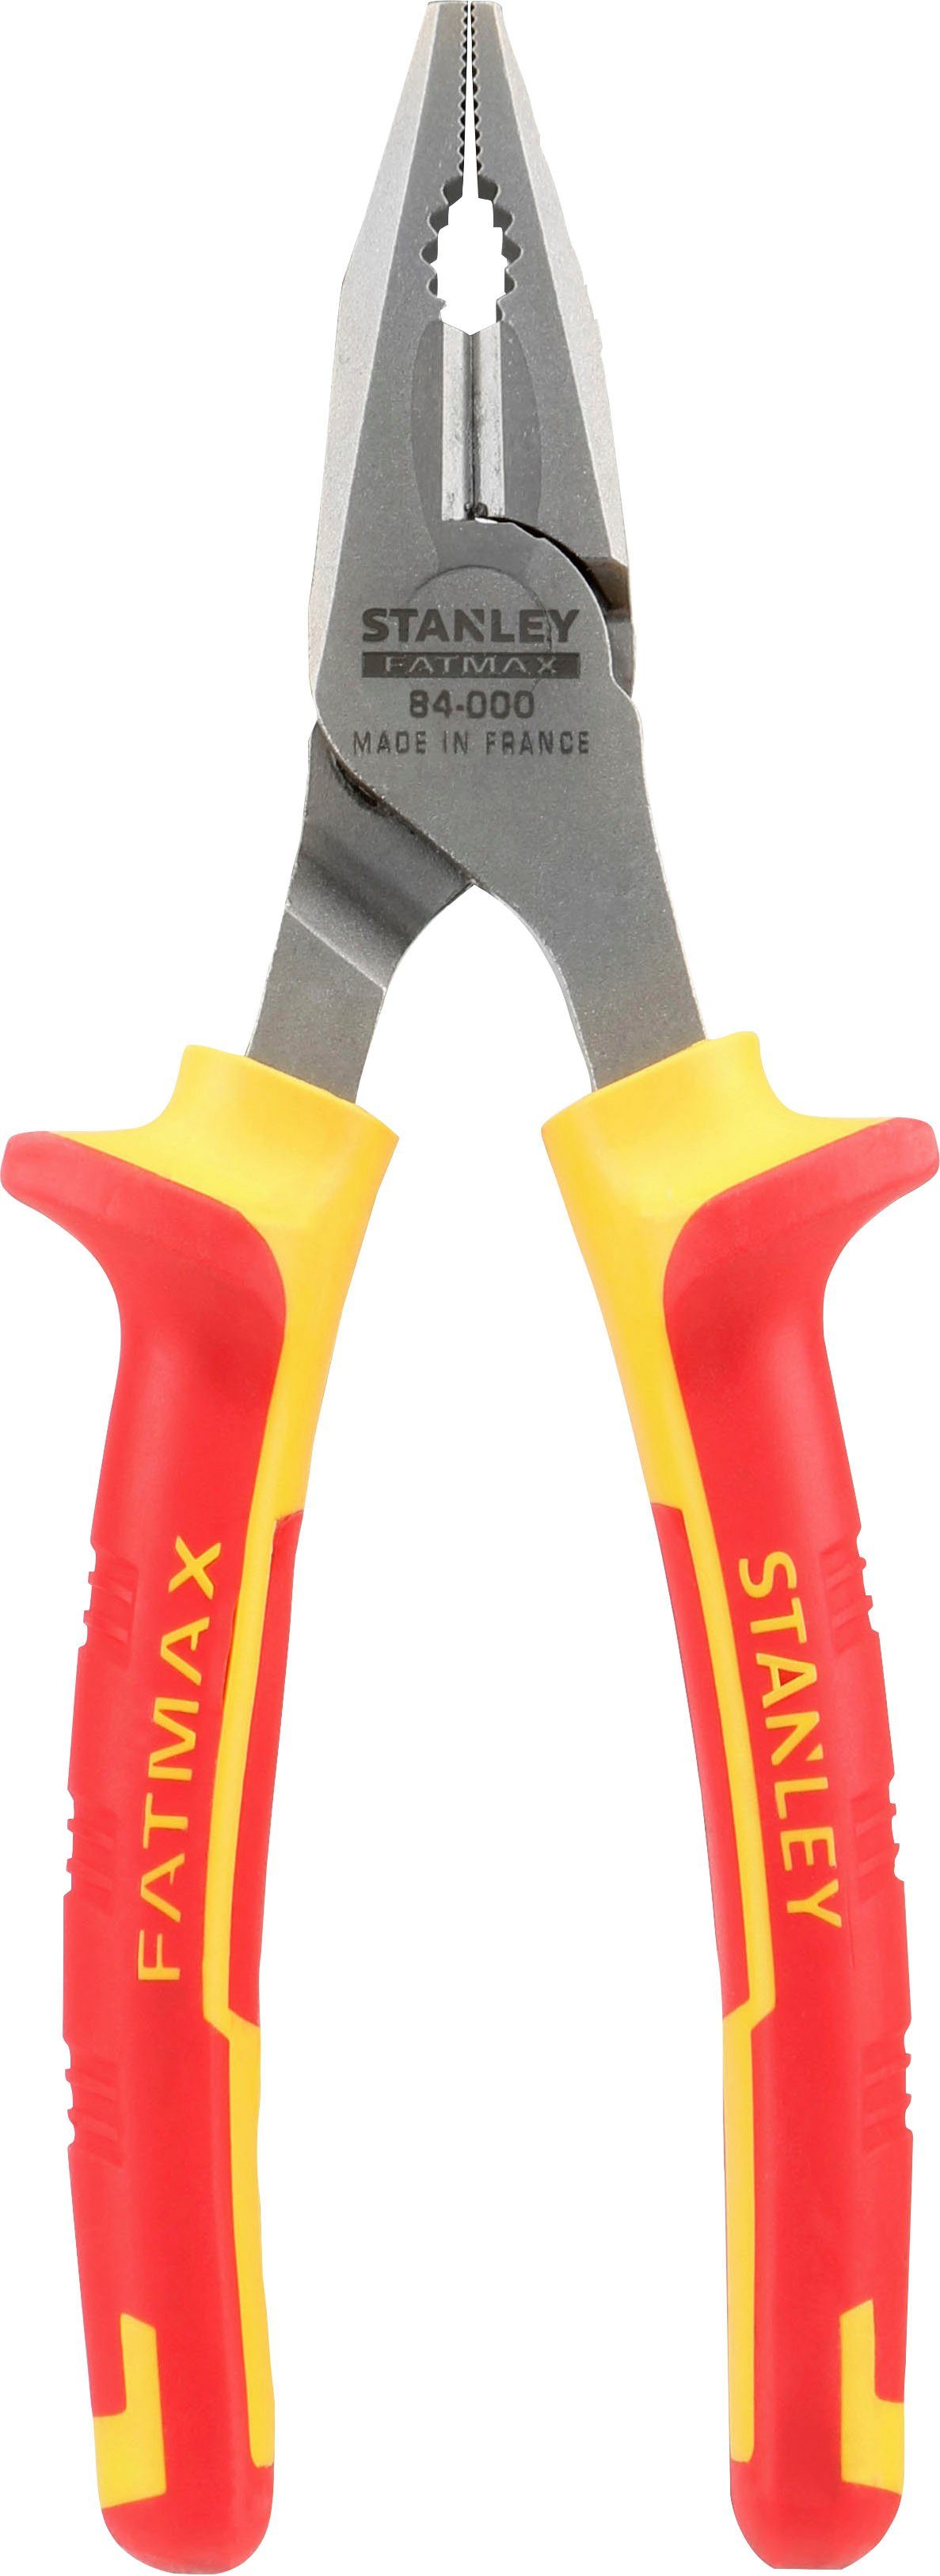 STANLEY Kombizange Werkzeugstahl 0-84-000, hochwertiger